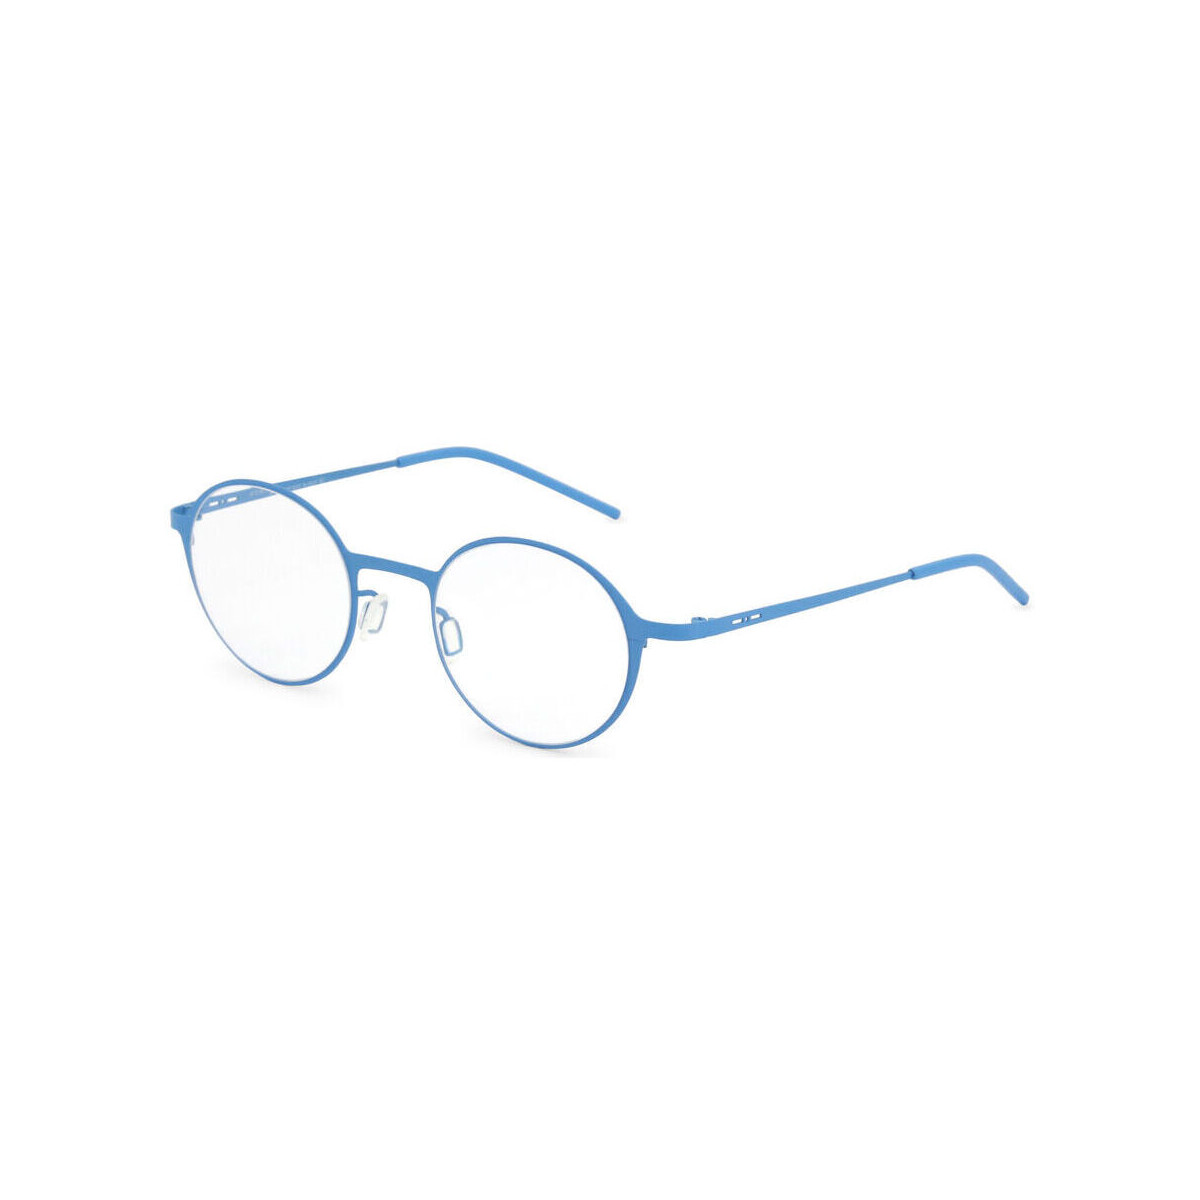 Hodinky & Bižuterie sluneční brýle Italia Independent - 5204A Modrá